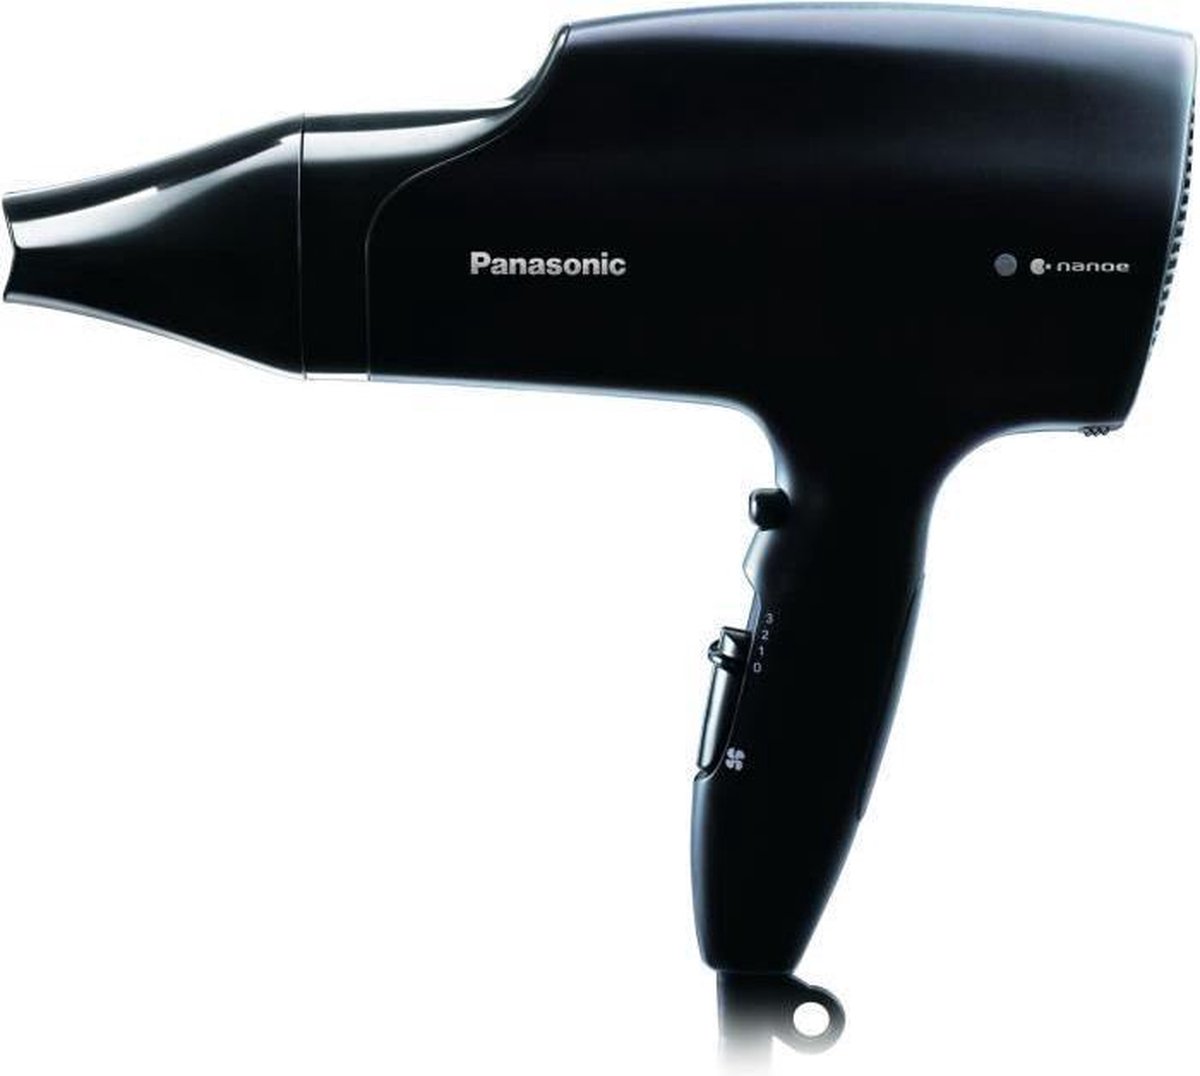 PANASONIC EH-NA66 Nano haardroger ™ - Panasonic voor professionals